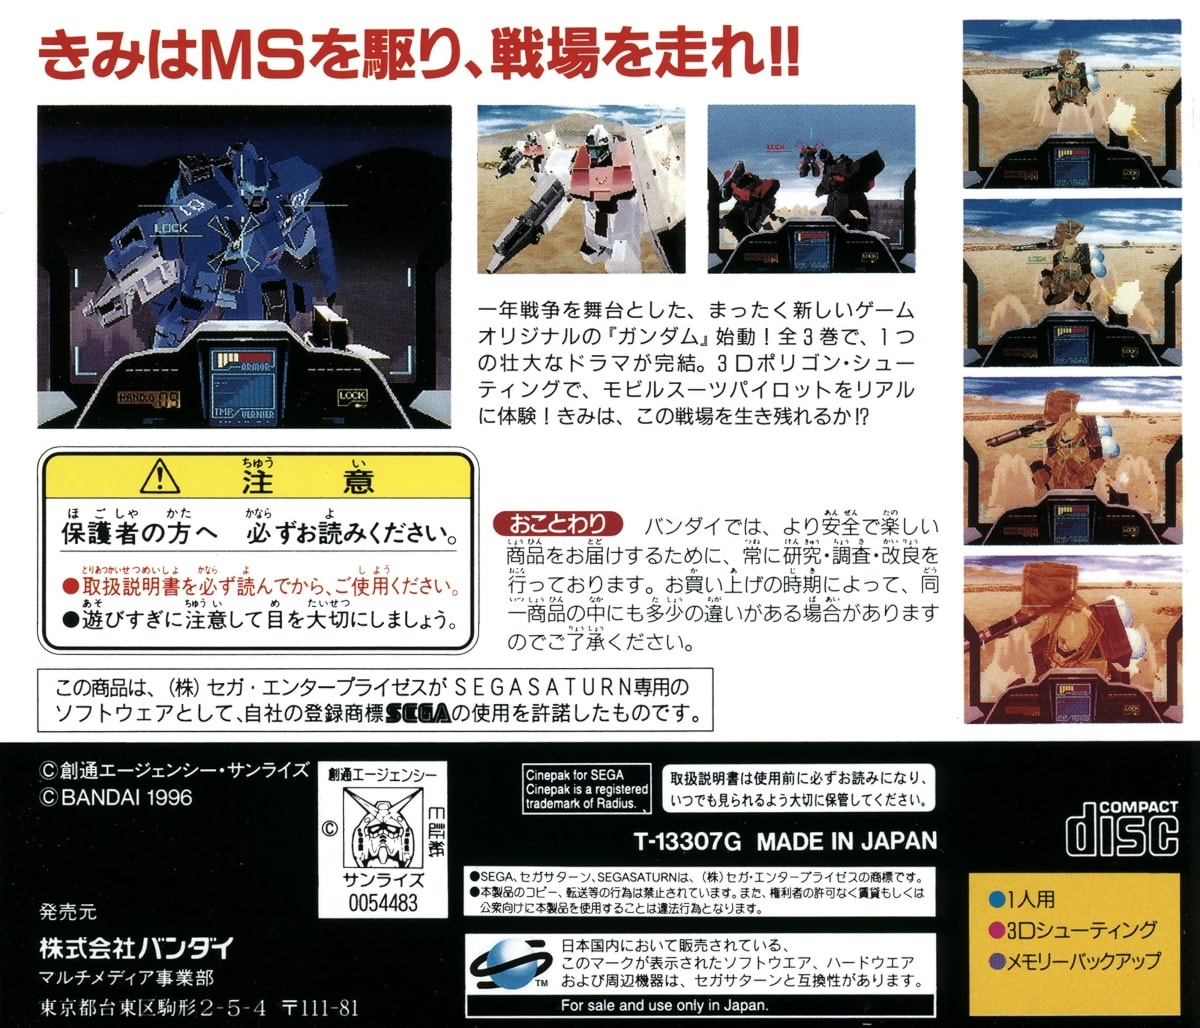 Kidou Senshi Gundam Gaiden I: Senritsu no Blue cover